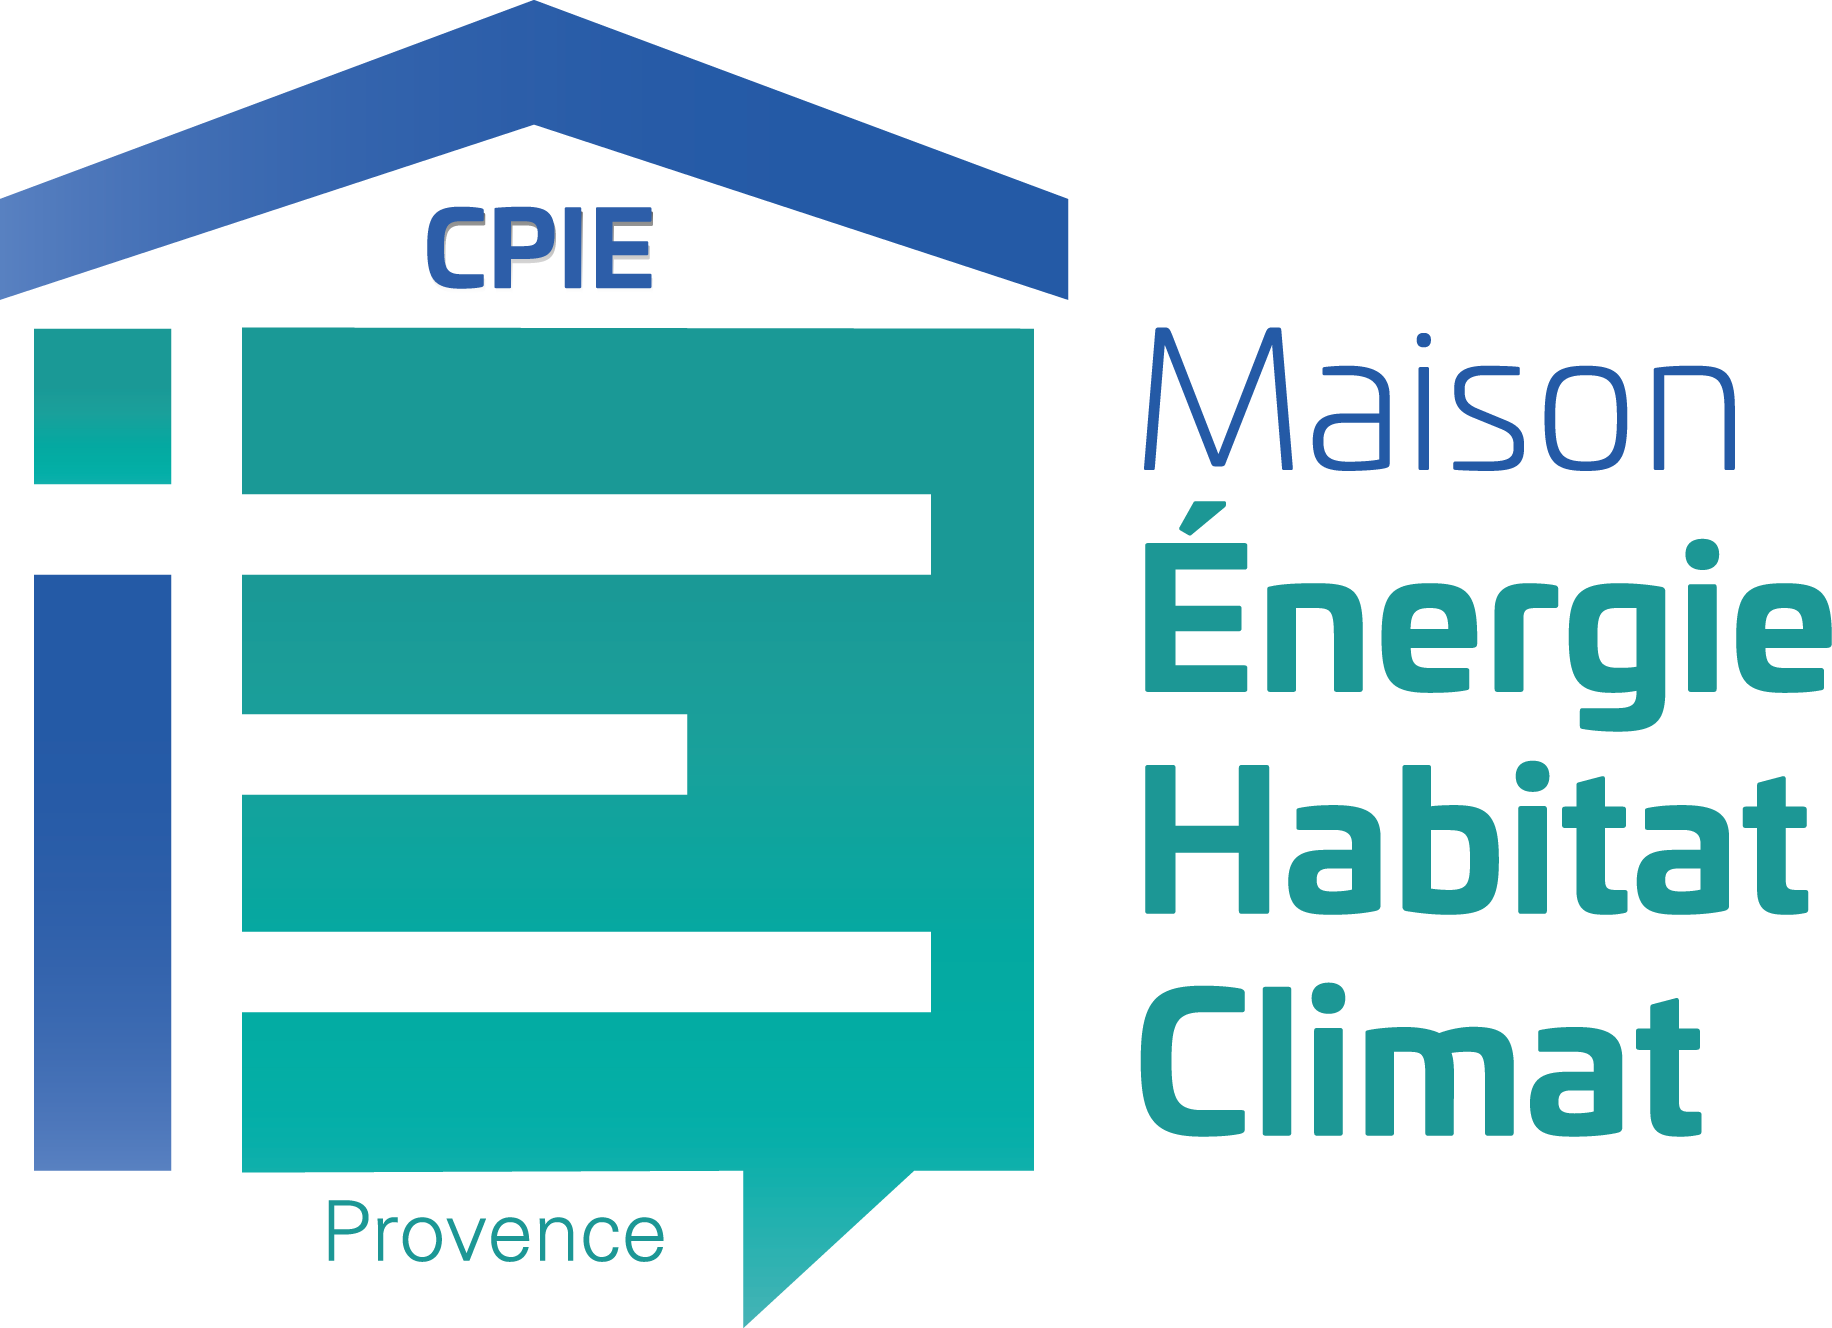 Maison Energie Habitat Climat - CPIE du Pays d'Aix